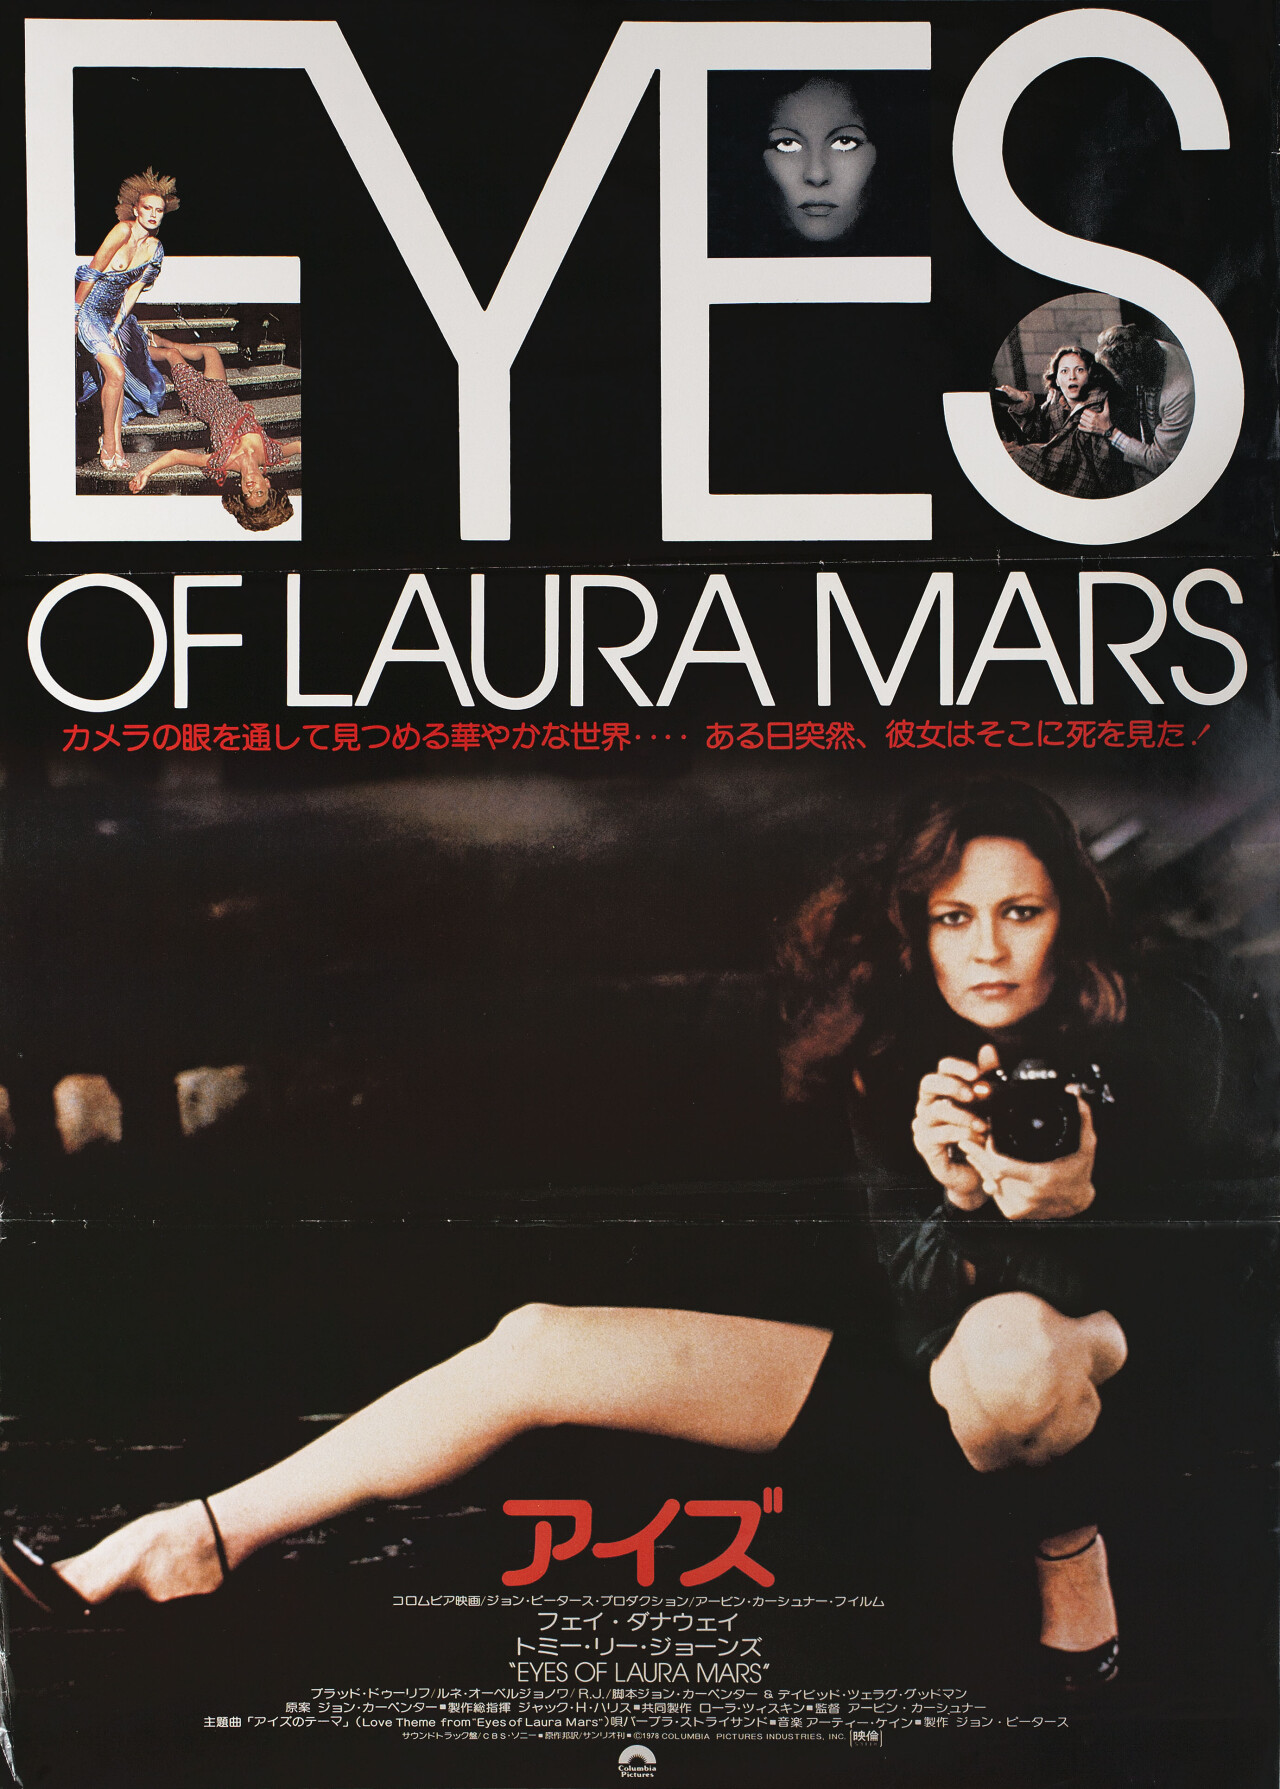 Глаза Лоры Марс (Eyes of Laura Mars, 1978), режиссёр Ирвин Кершнер, японский постер к фильму (ужасы, 1978 год)